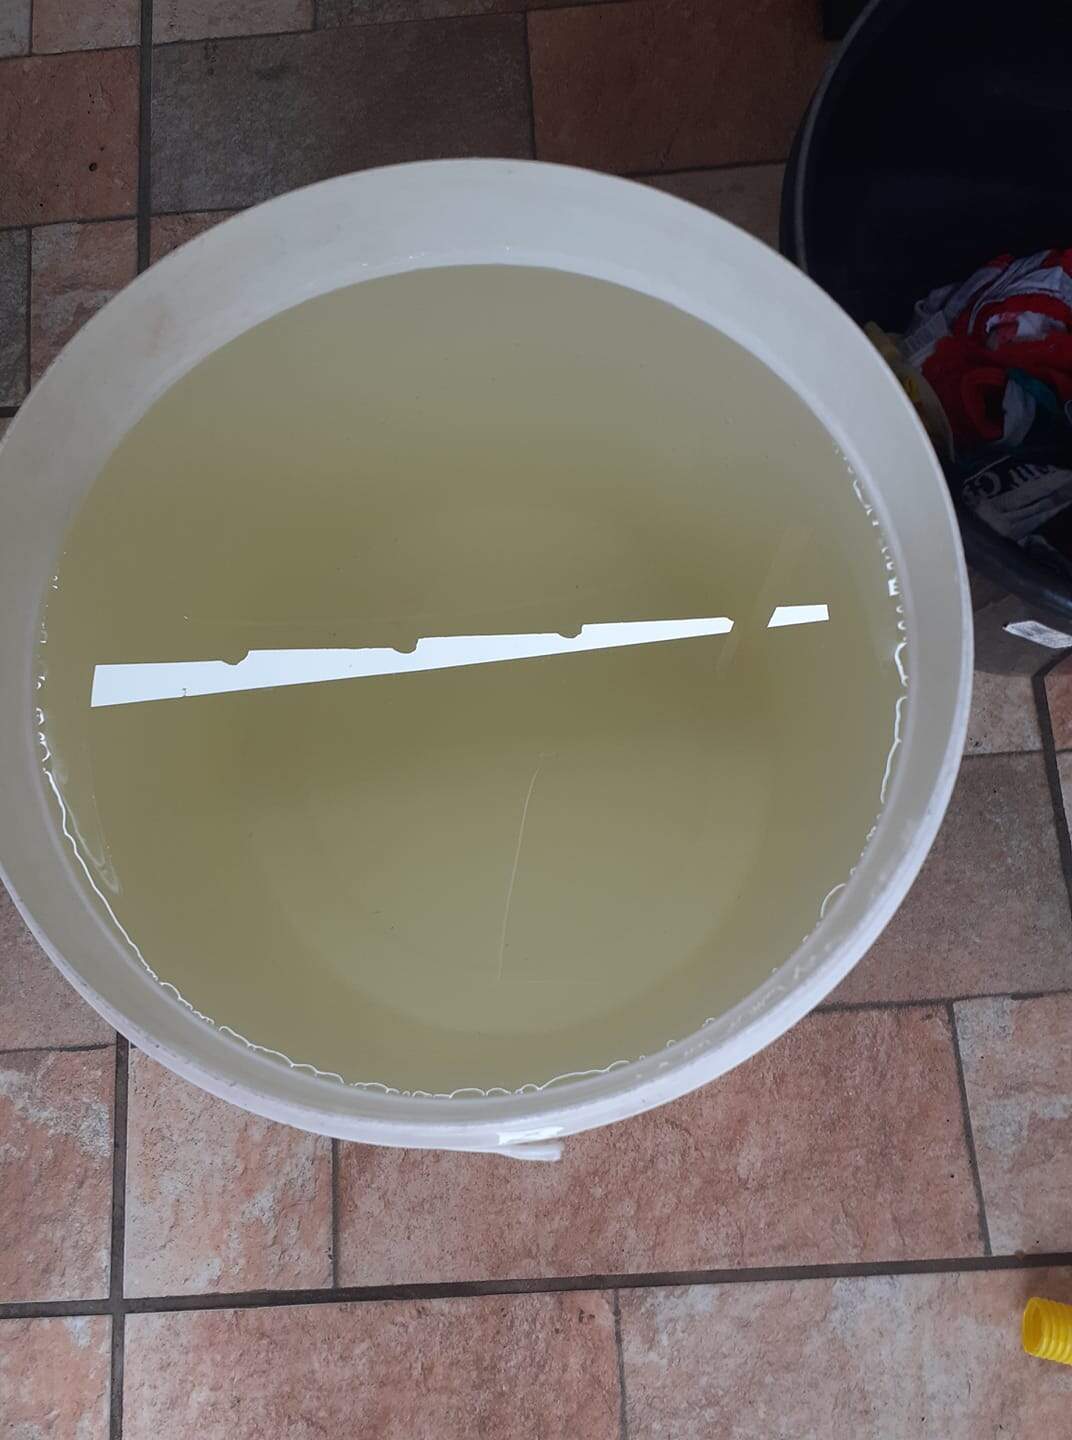 Moradores de bairros de São Vicente, Santos e Cubatão se queixaram da qualidade da água que tinha coloração amarelada nesta terça-feira (8) 